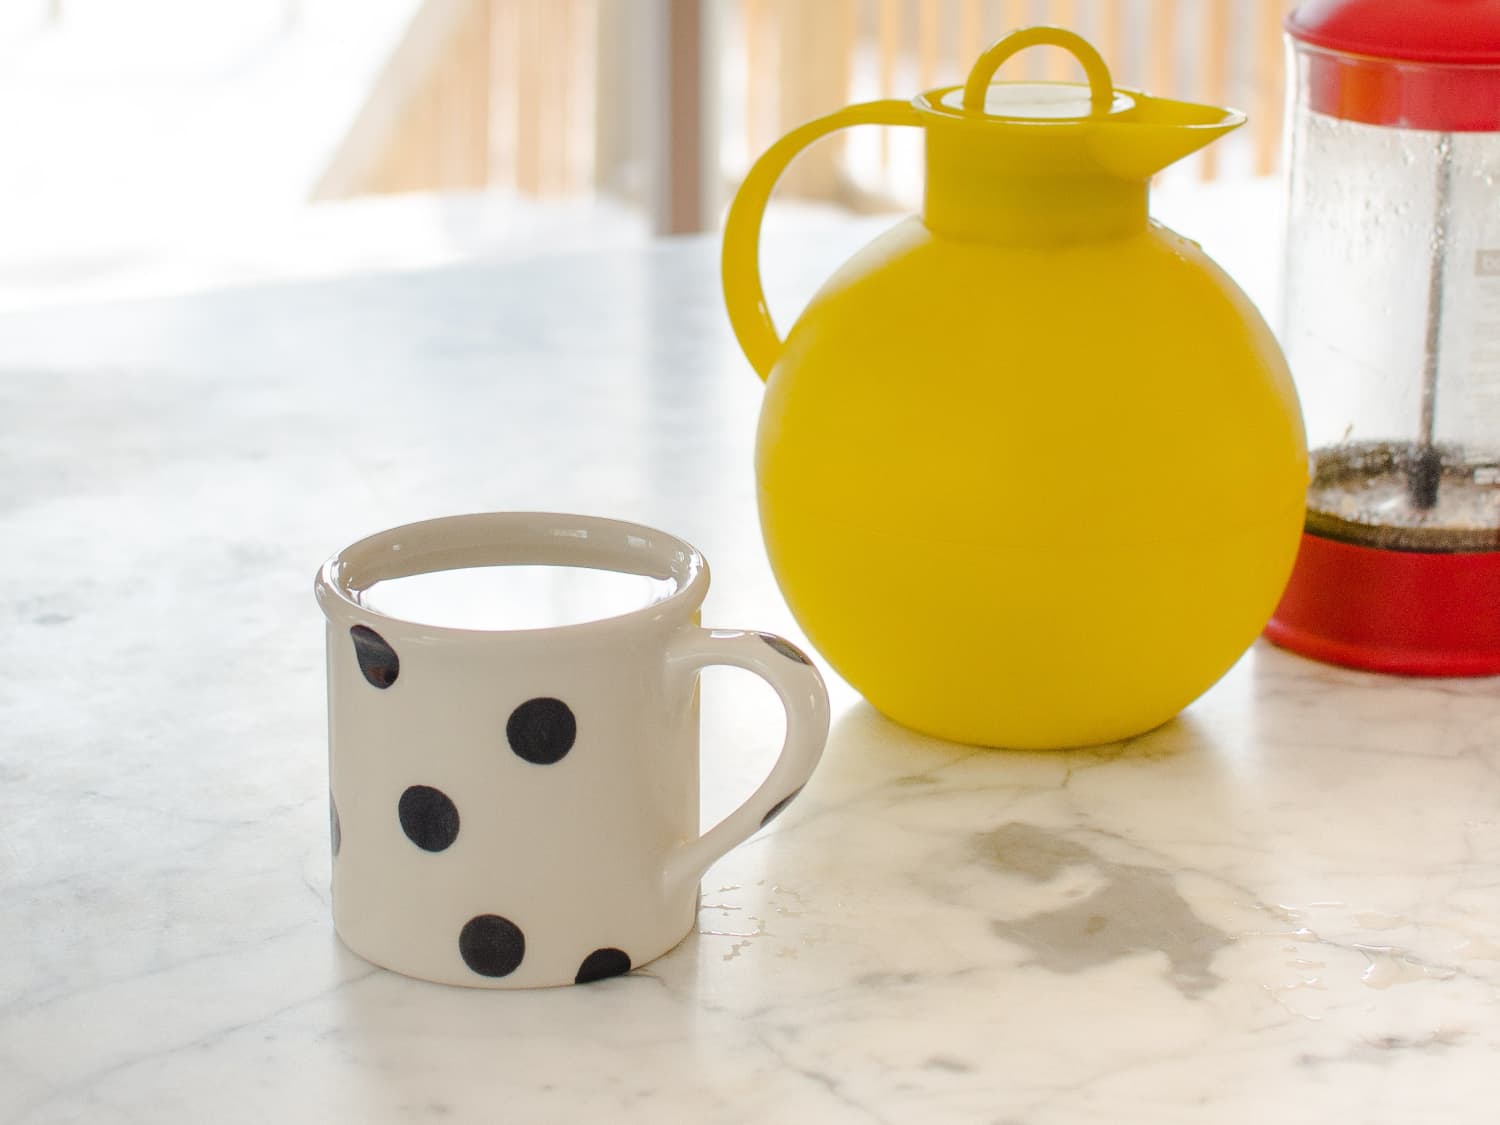 My Winter Morning Coffee Ritual: Preheat the Mug to Keep Coffee